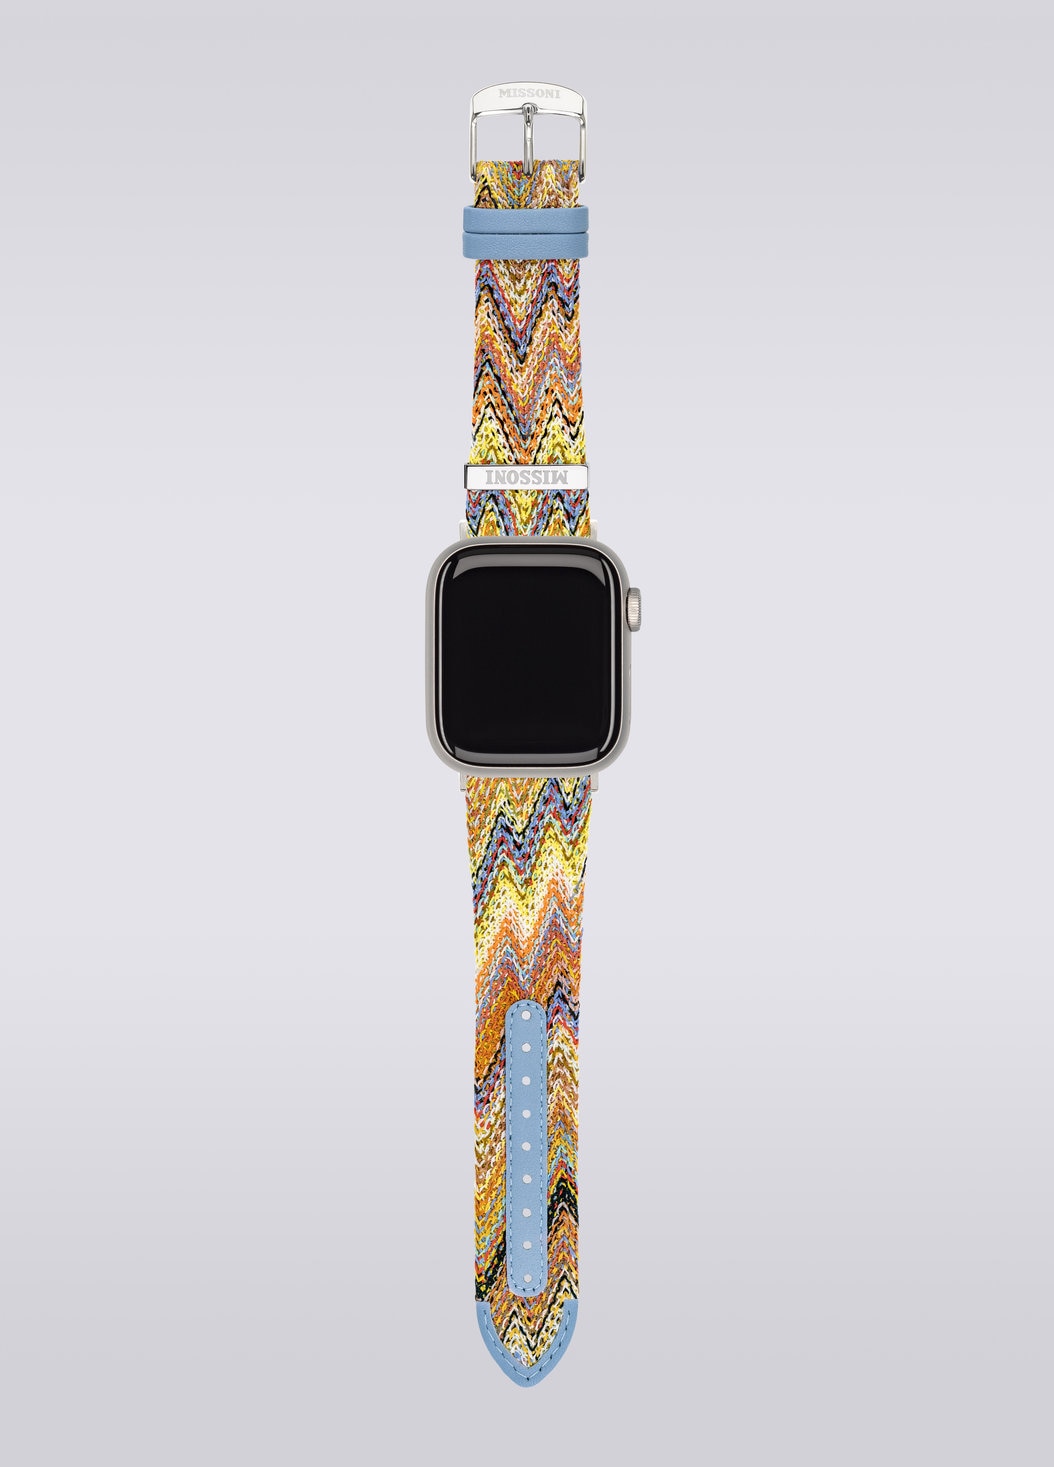 Missoni Fabric 22 mm mit Apple Watch kompatibles Armband, Mehrfarbig  - 8053147046280 - 3